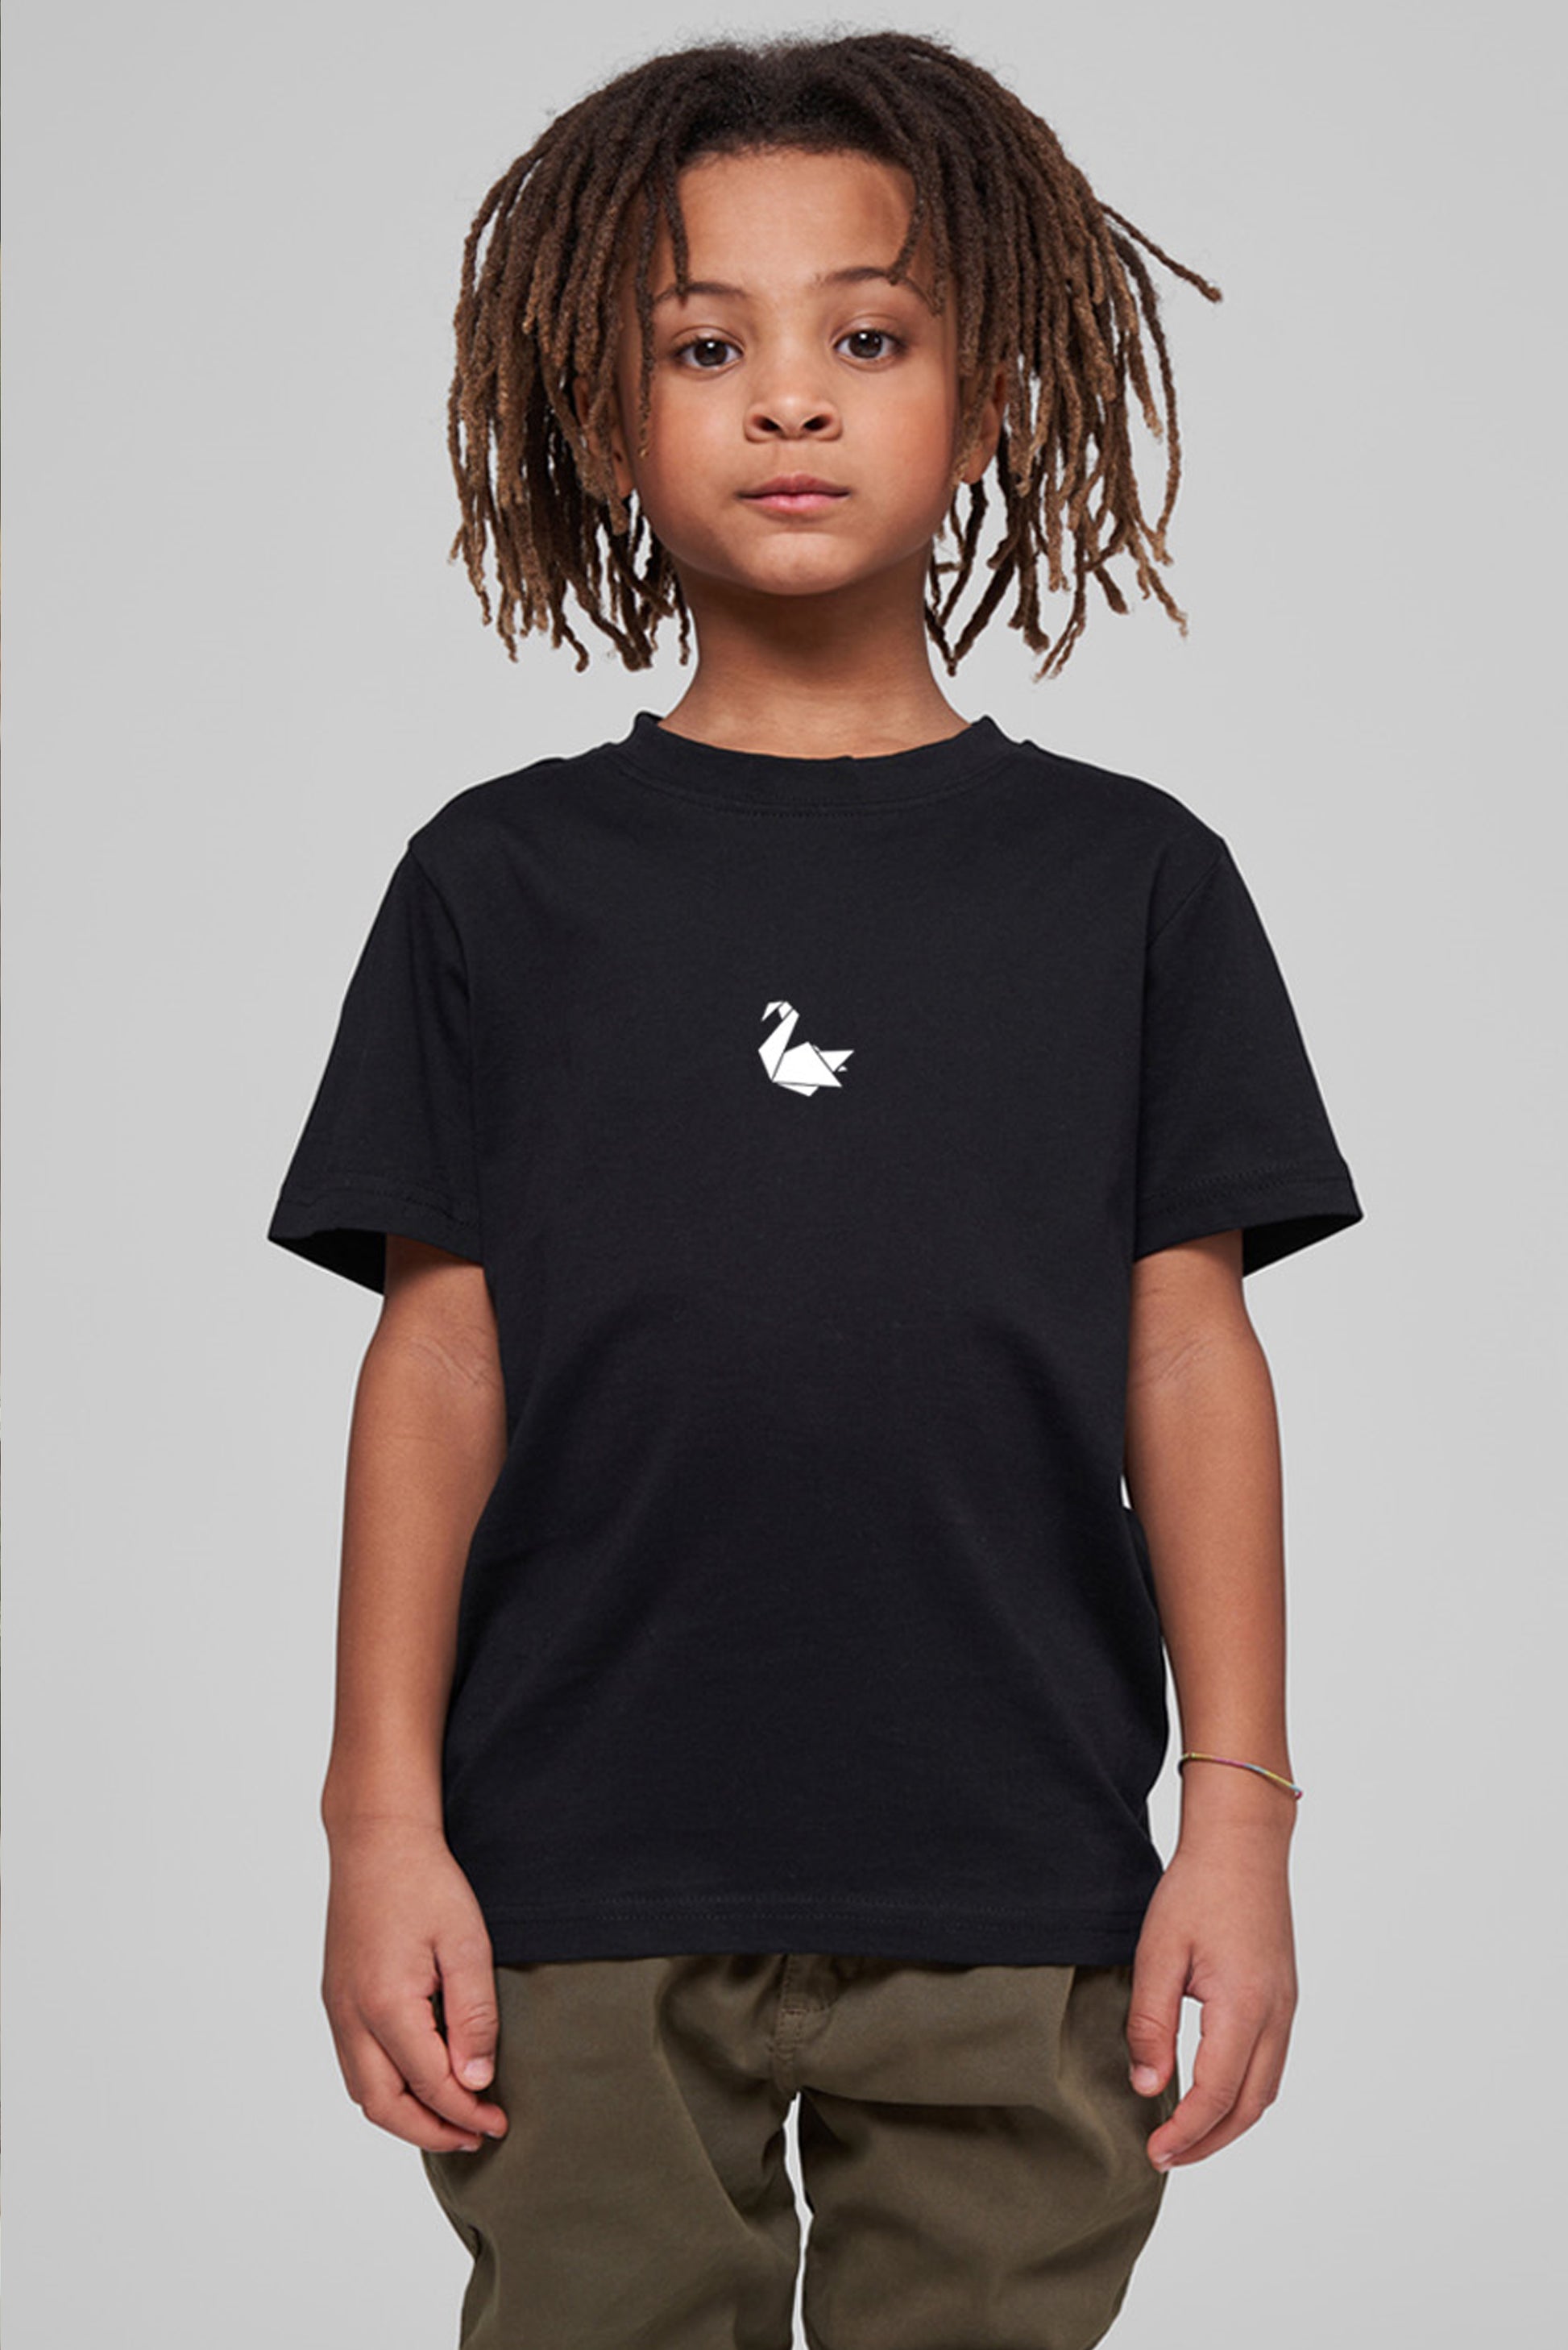 Kids Tee Unisex 'Basic'  - Black - Swanlife Fashion